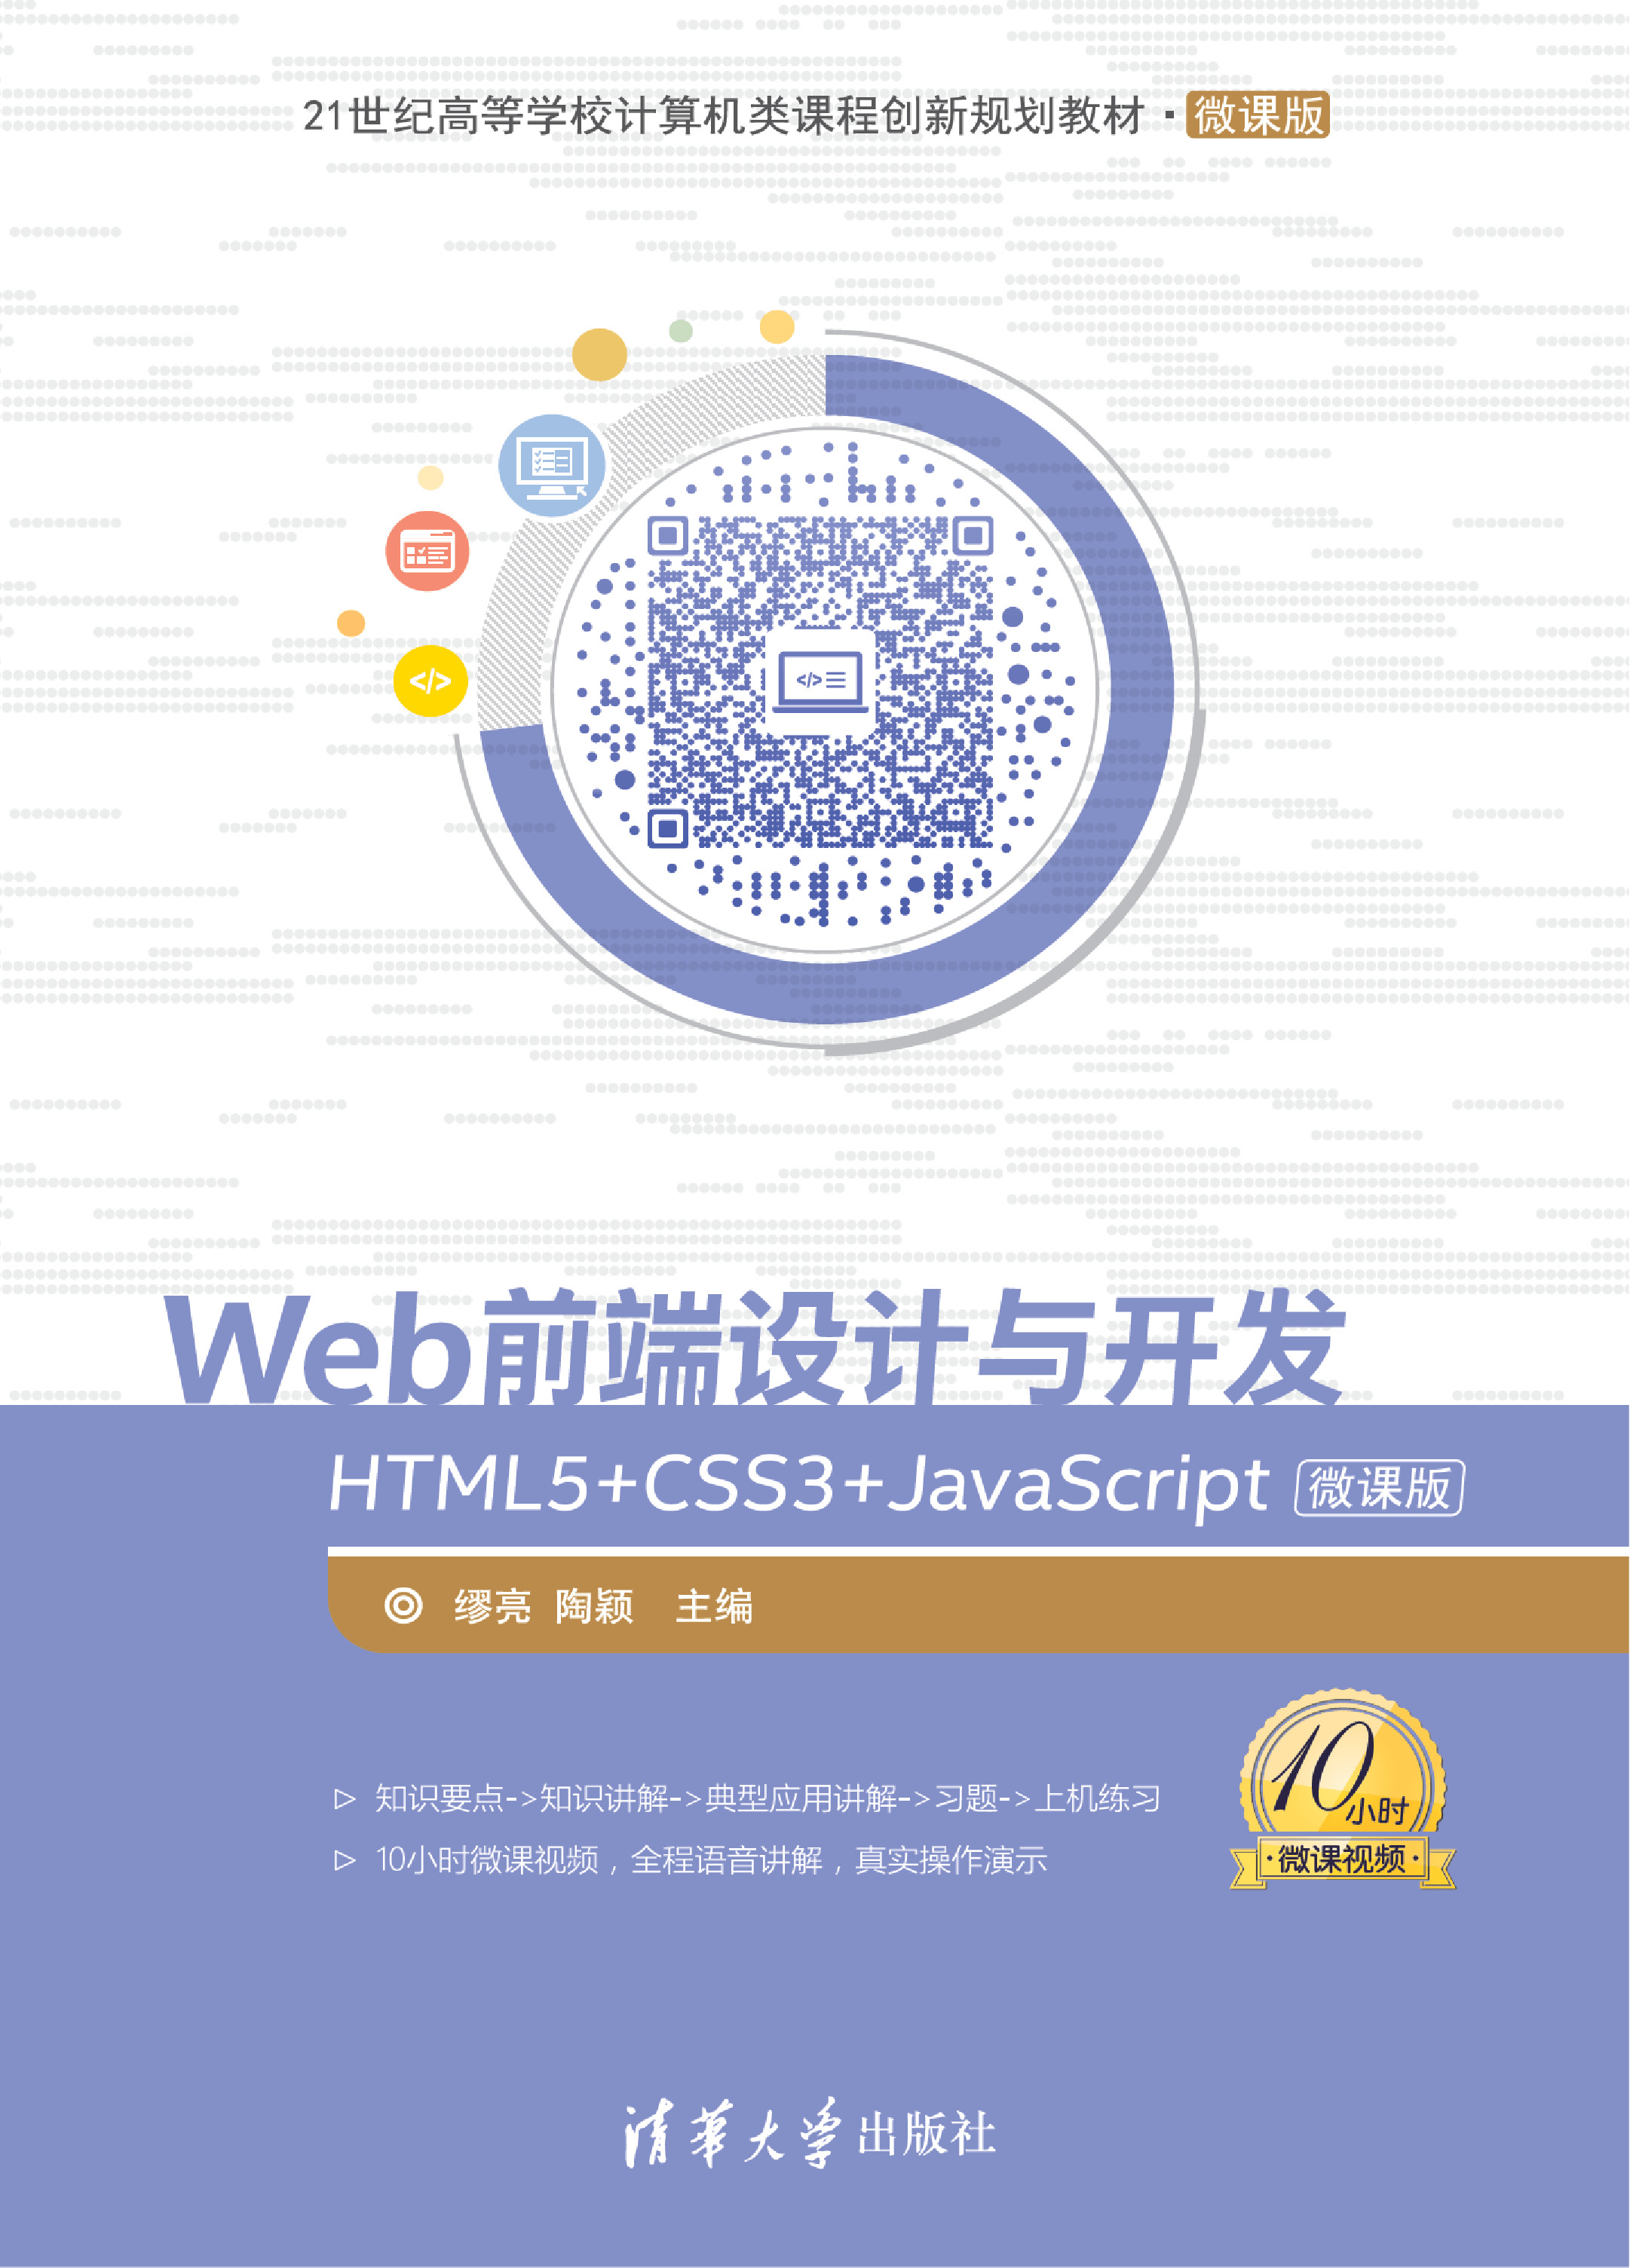 Web前端设计与开发——HTML5 CSS3 JavaScr ipt微课版